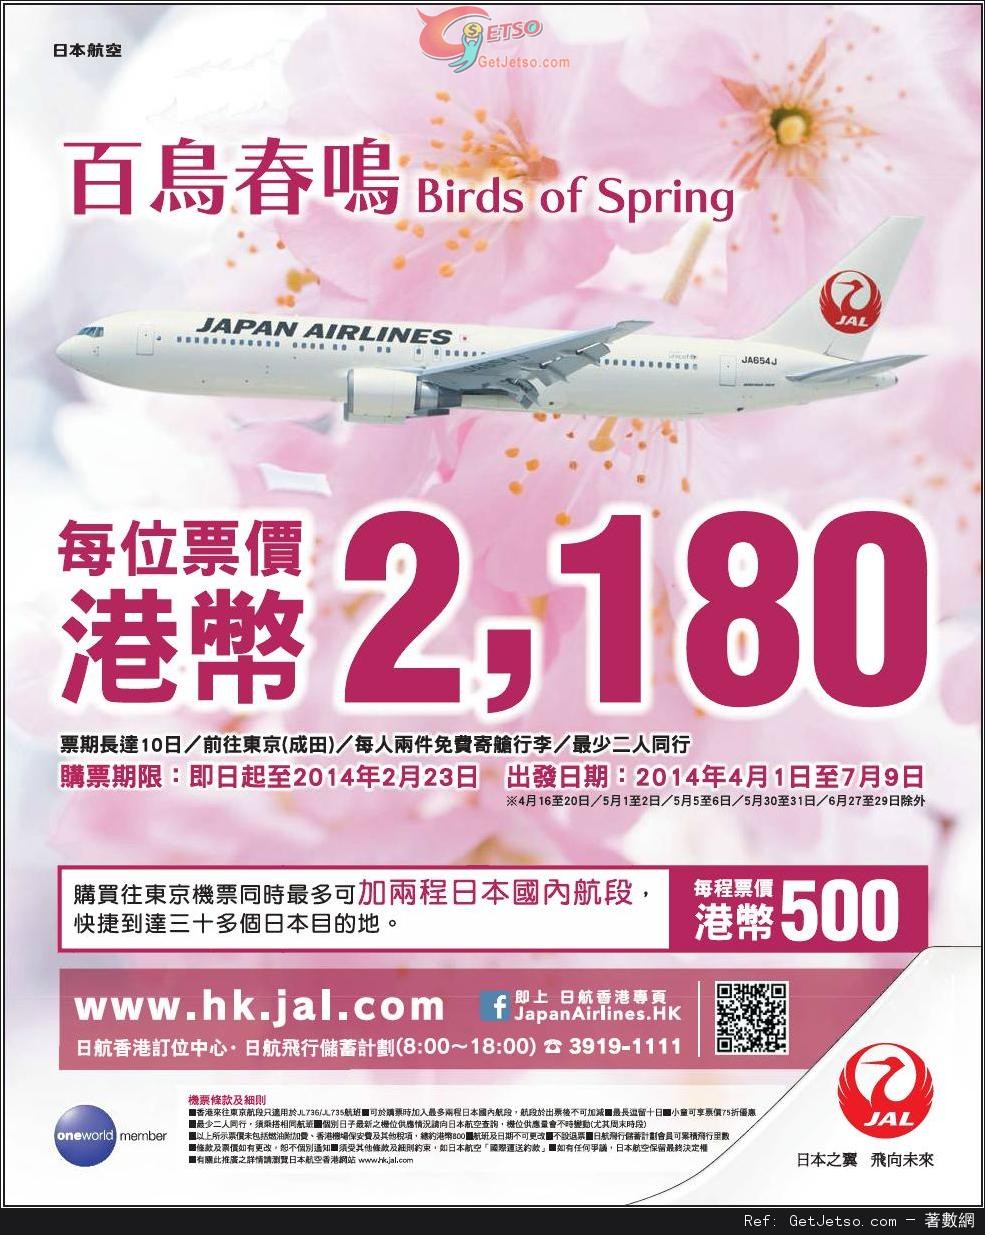 低至80來回東京機票優惠@日本航空(至14年2月23日)圖片1